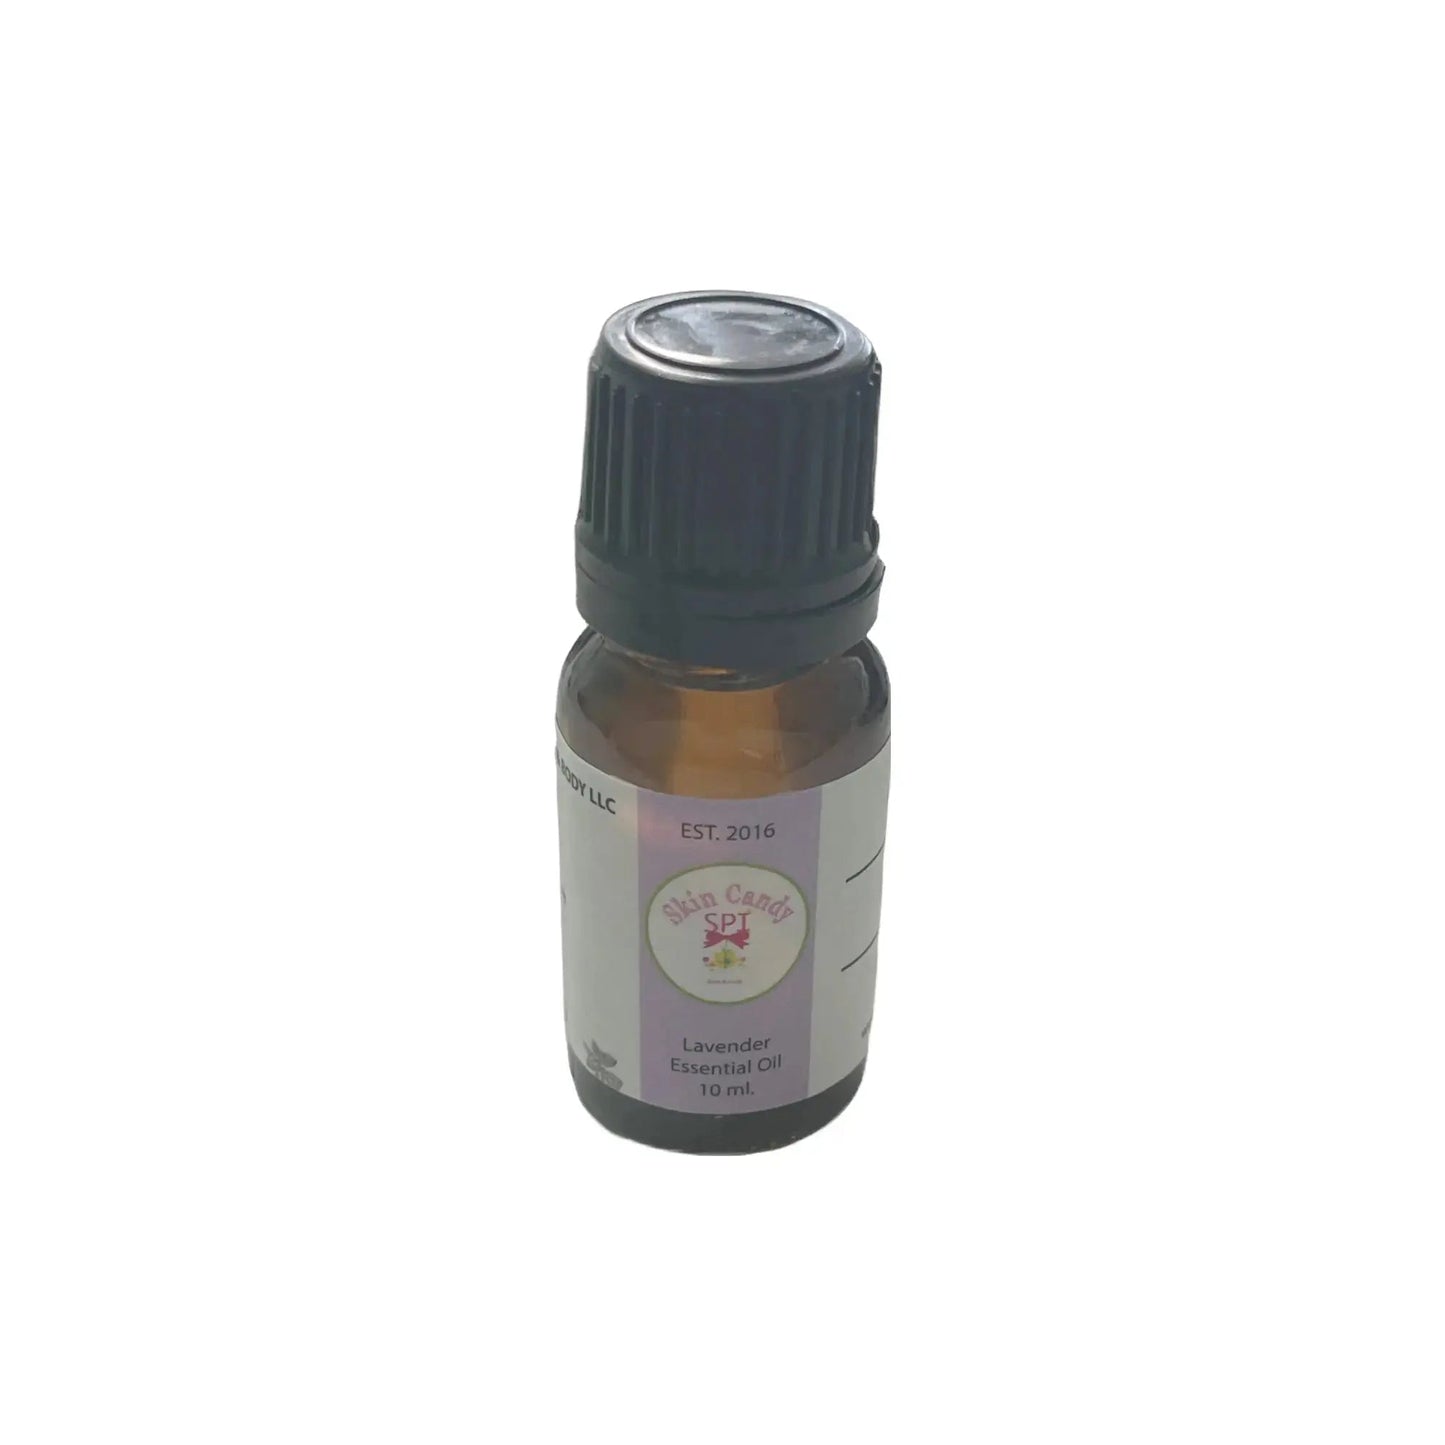 Lavender Essential Oil 10 ml. - Skin Candy Bath & Body